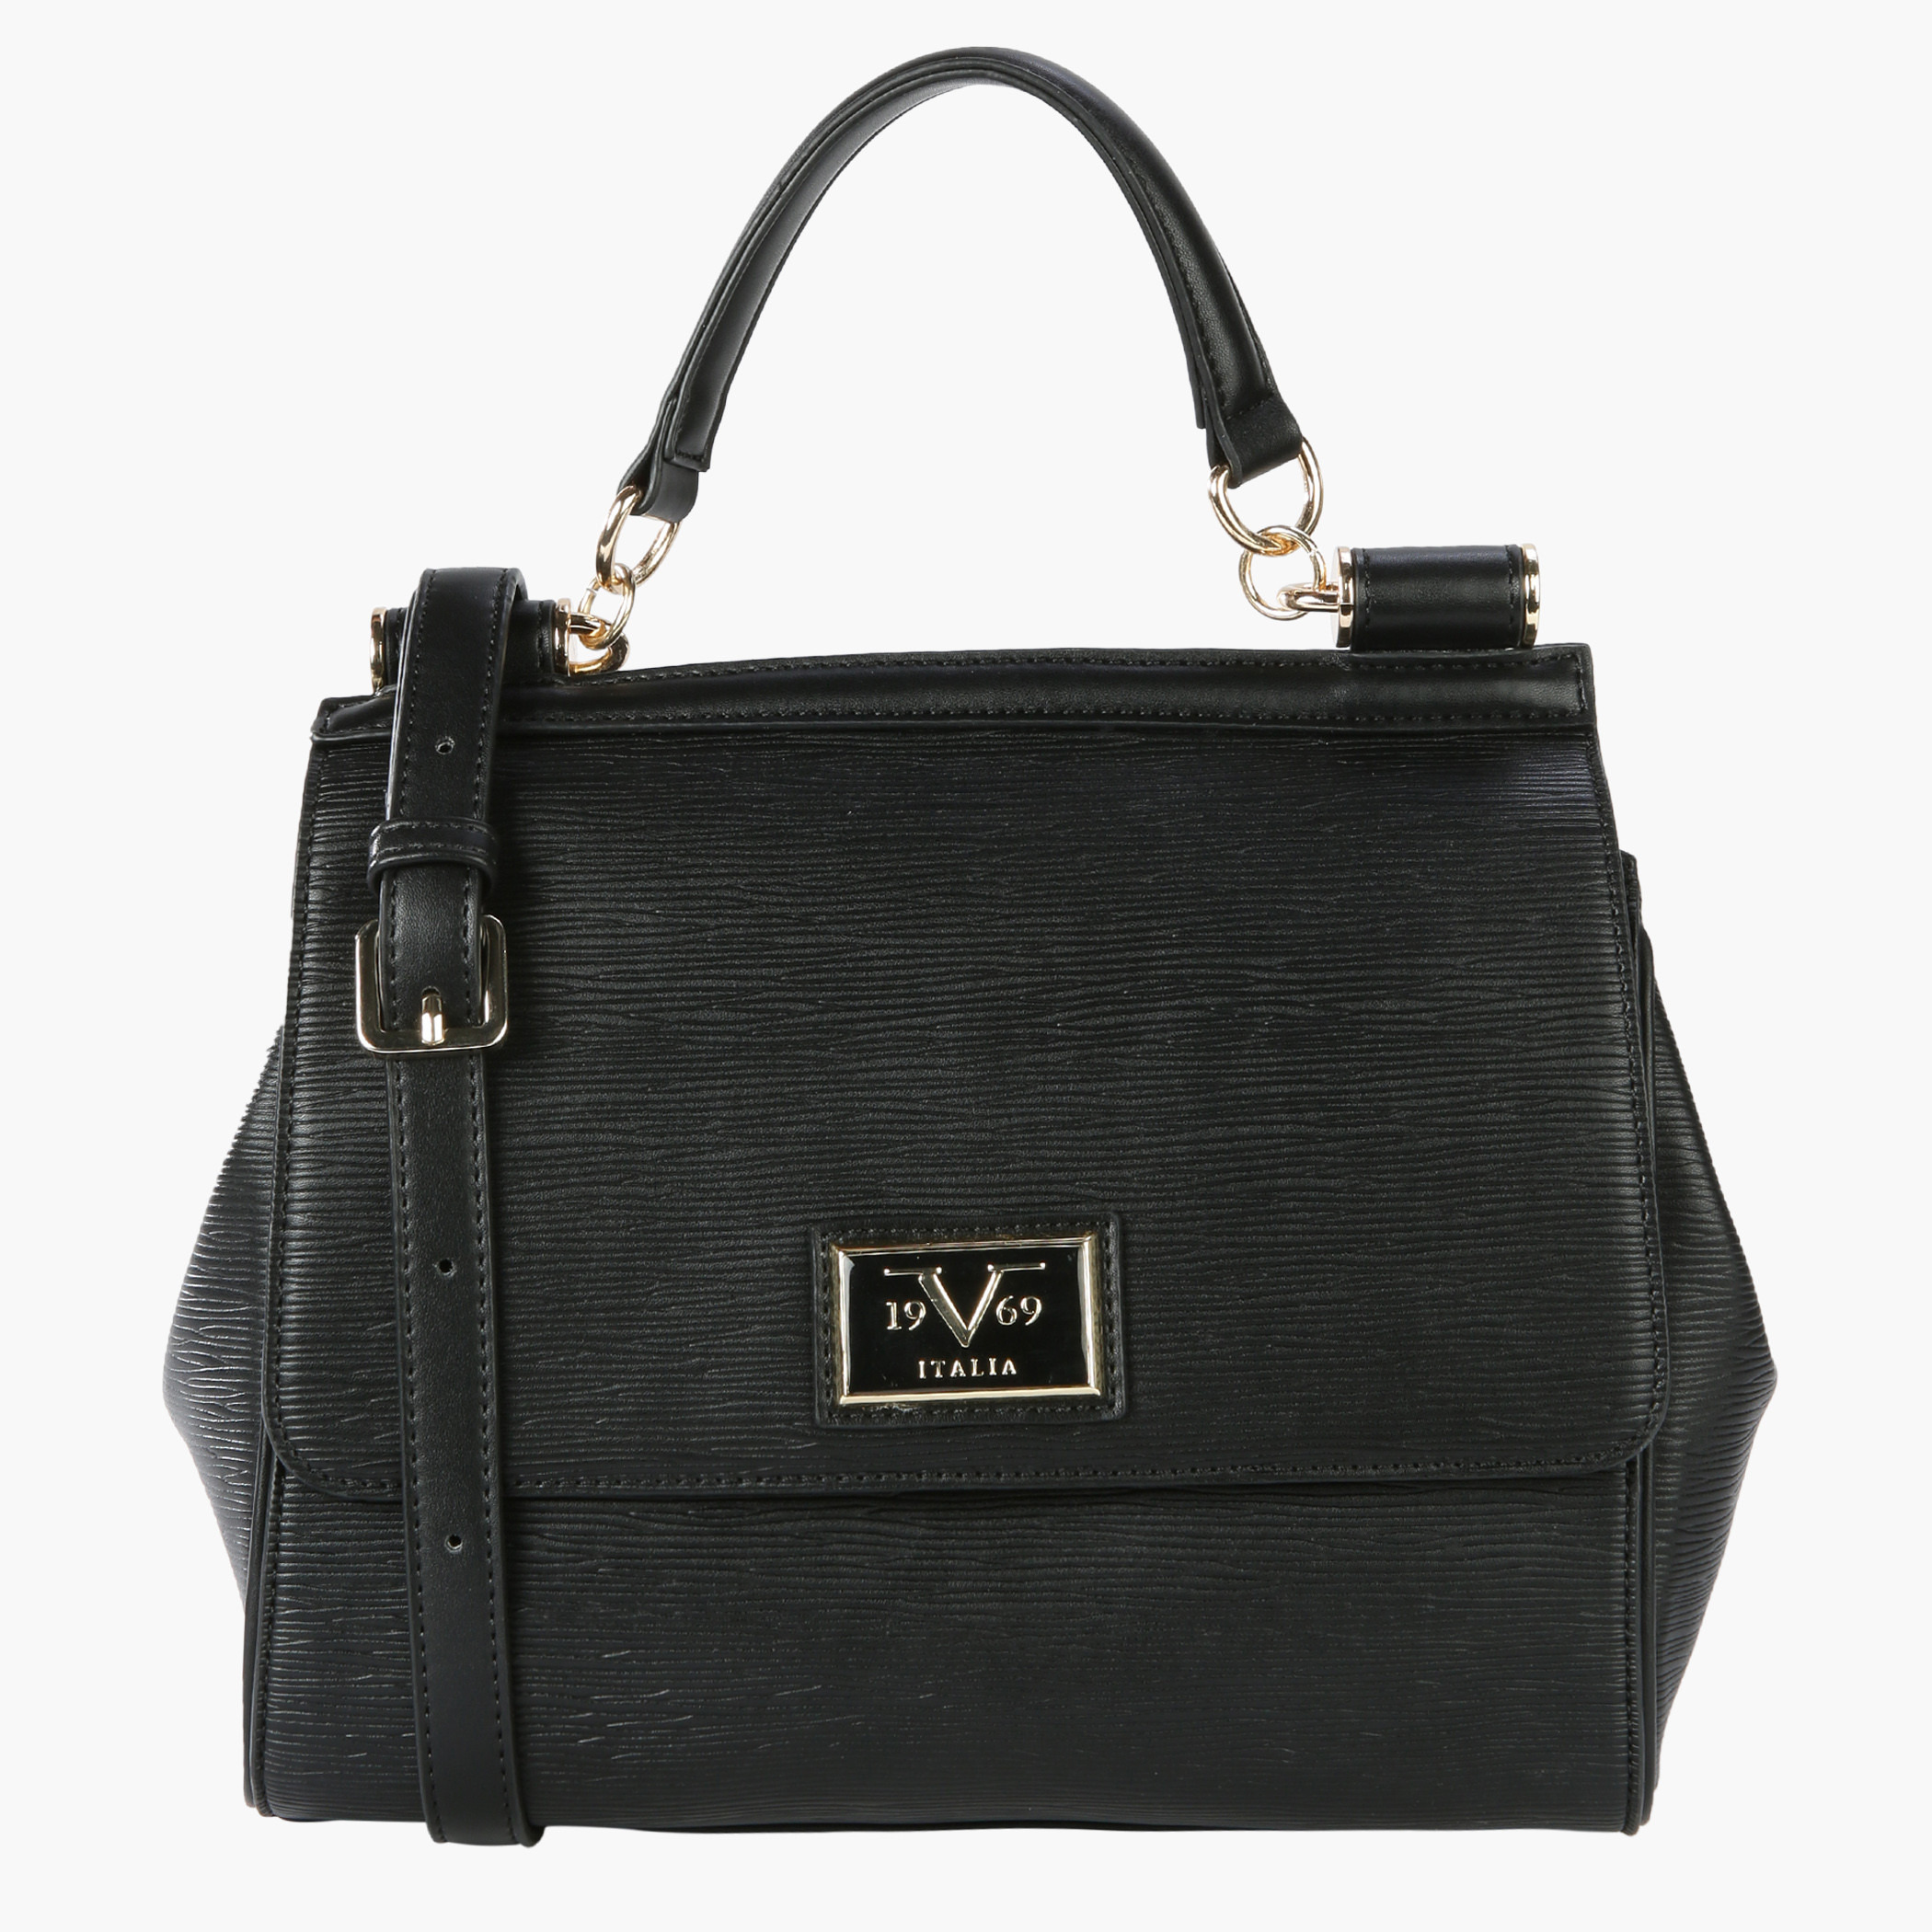 19V69 Handbag Black - ShopStyle Shoulder Bags